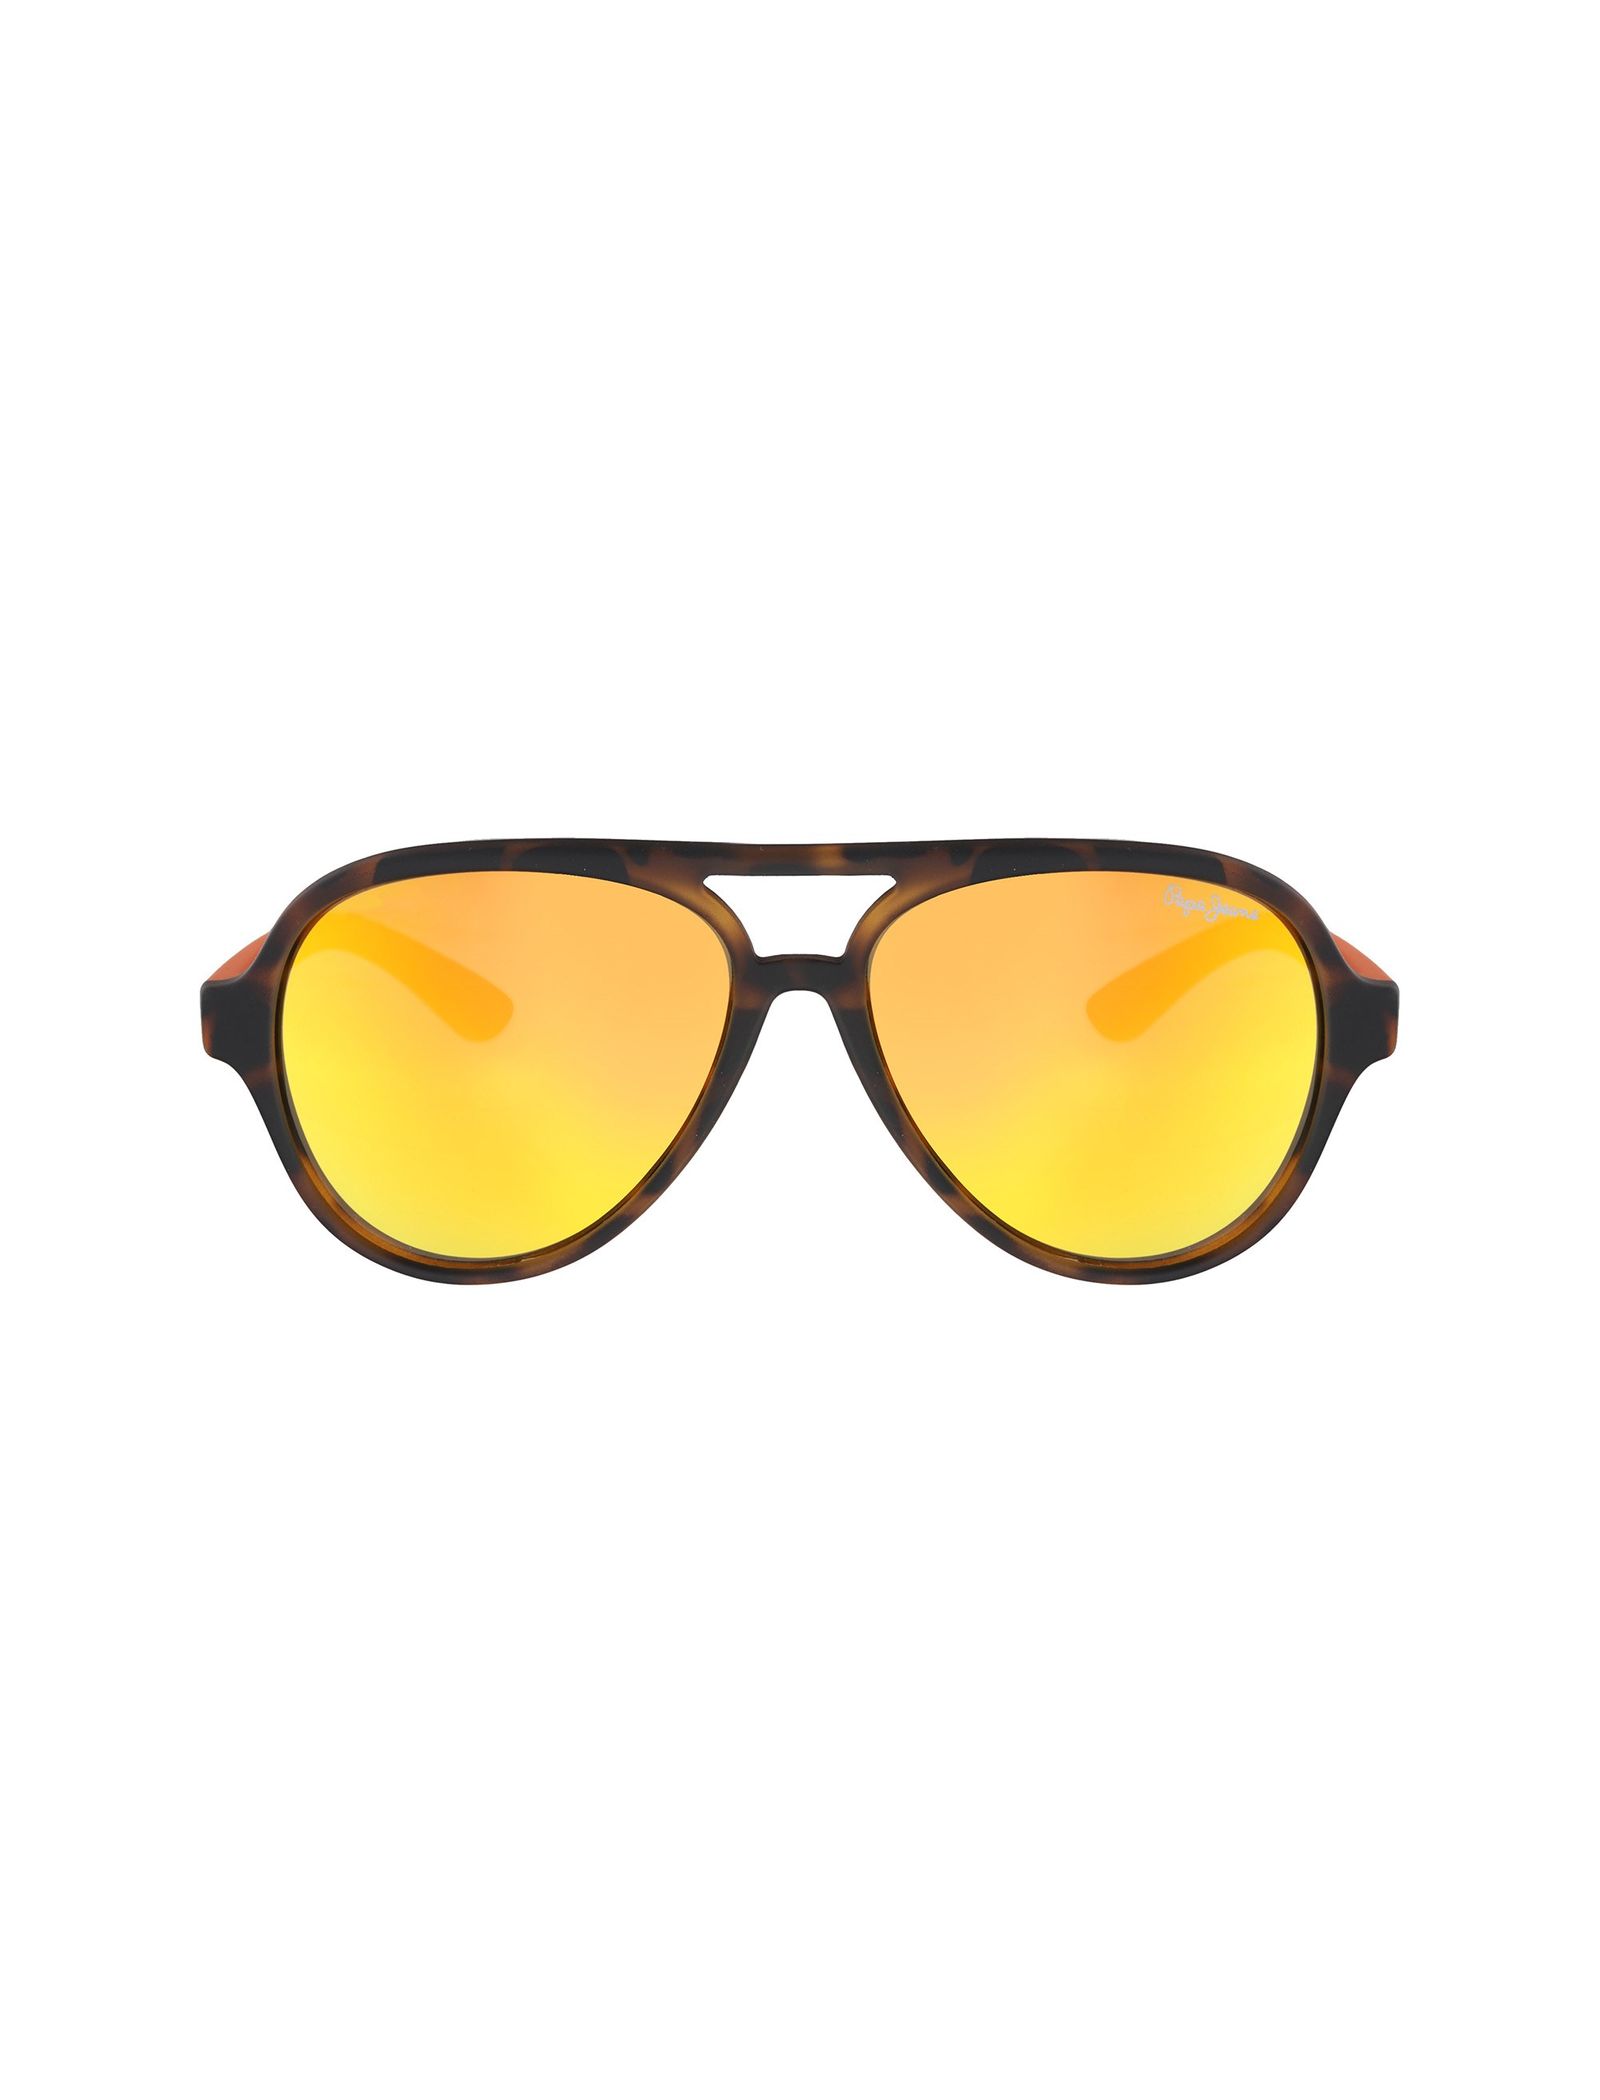 عینک آفتابی خلبانی بچگانه - پپه جینز - قهوه اي و نارنجي - 1